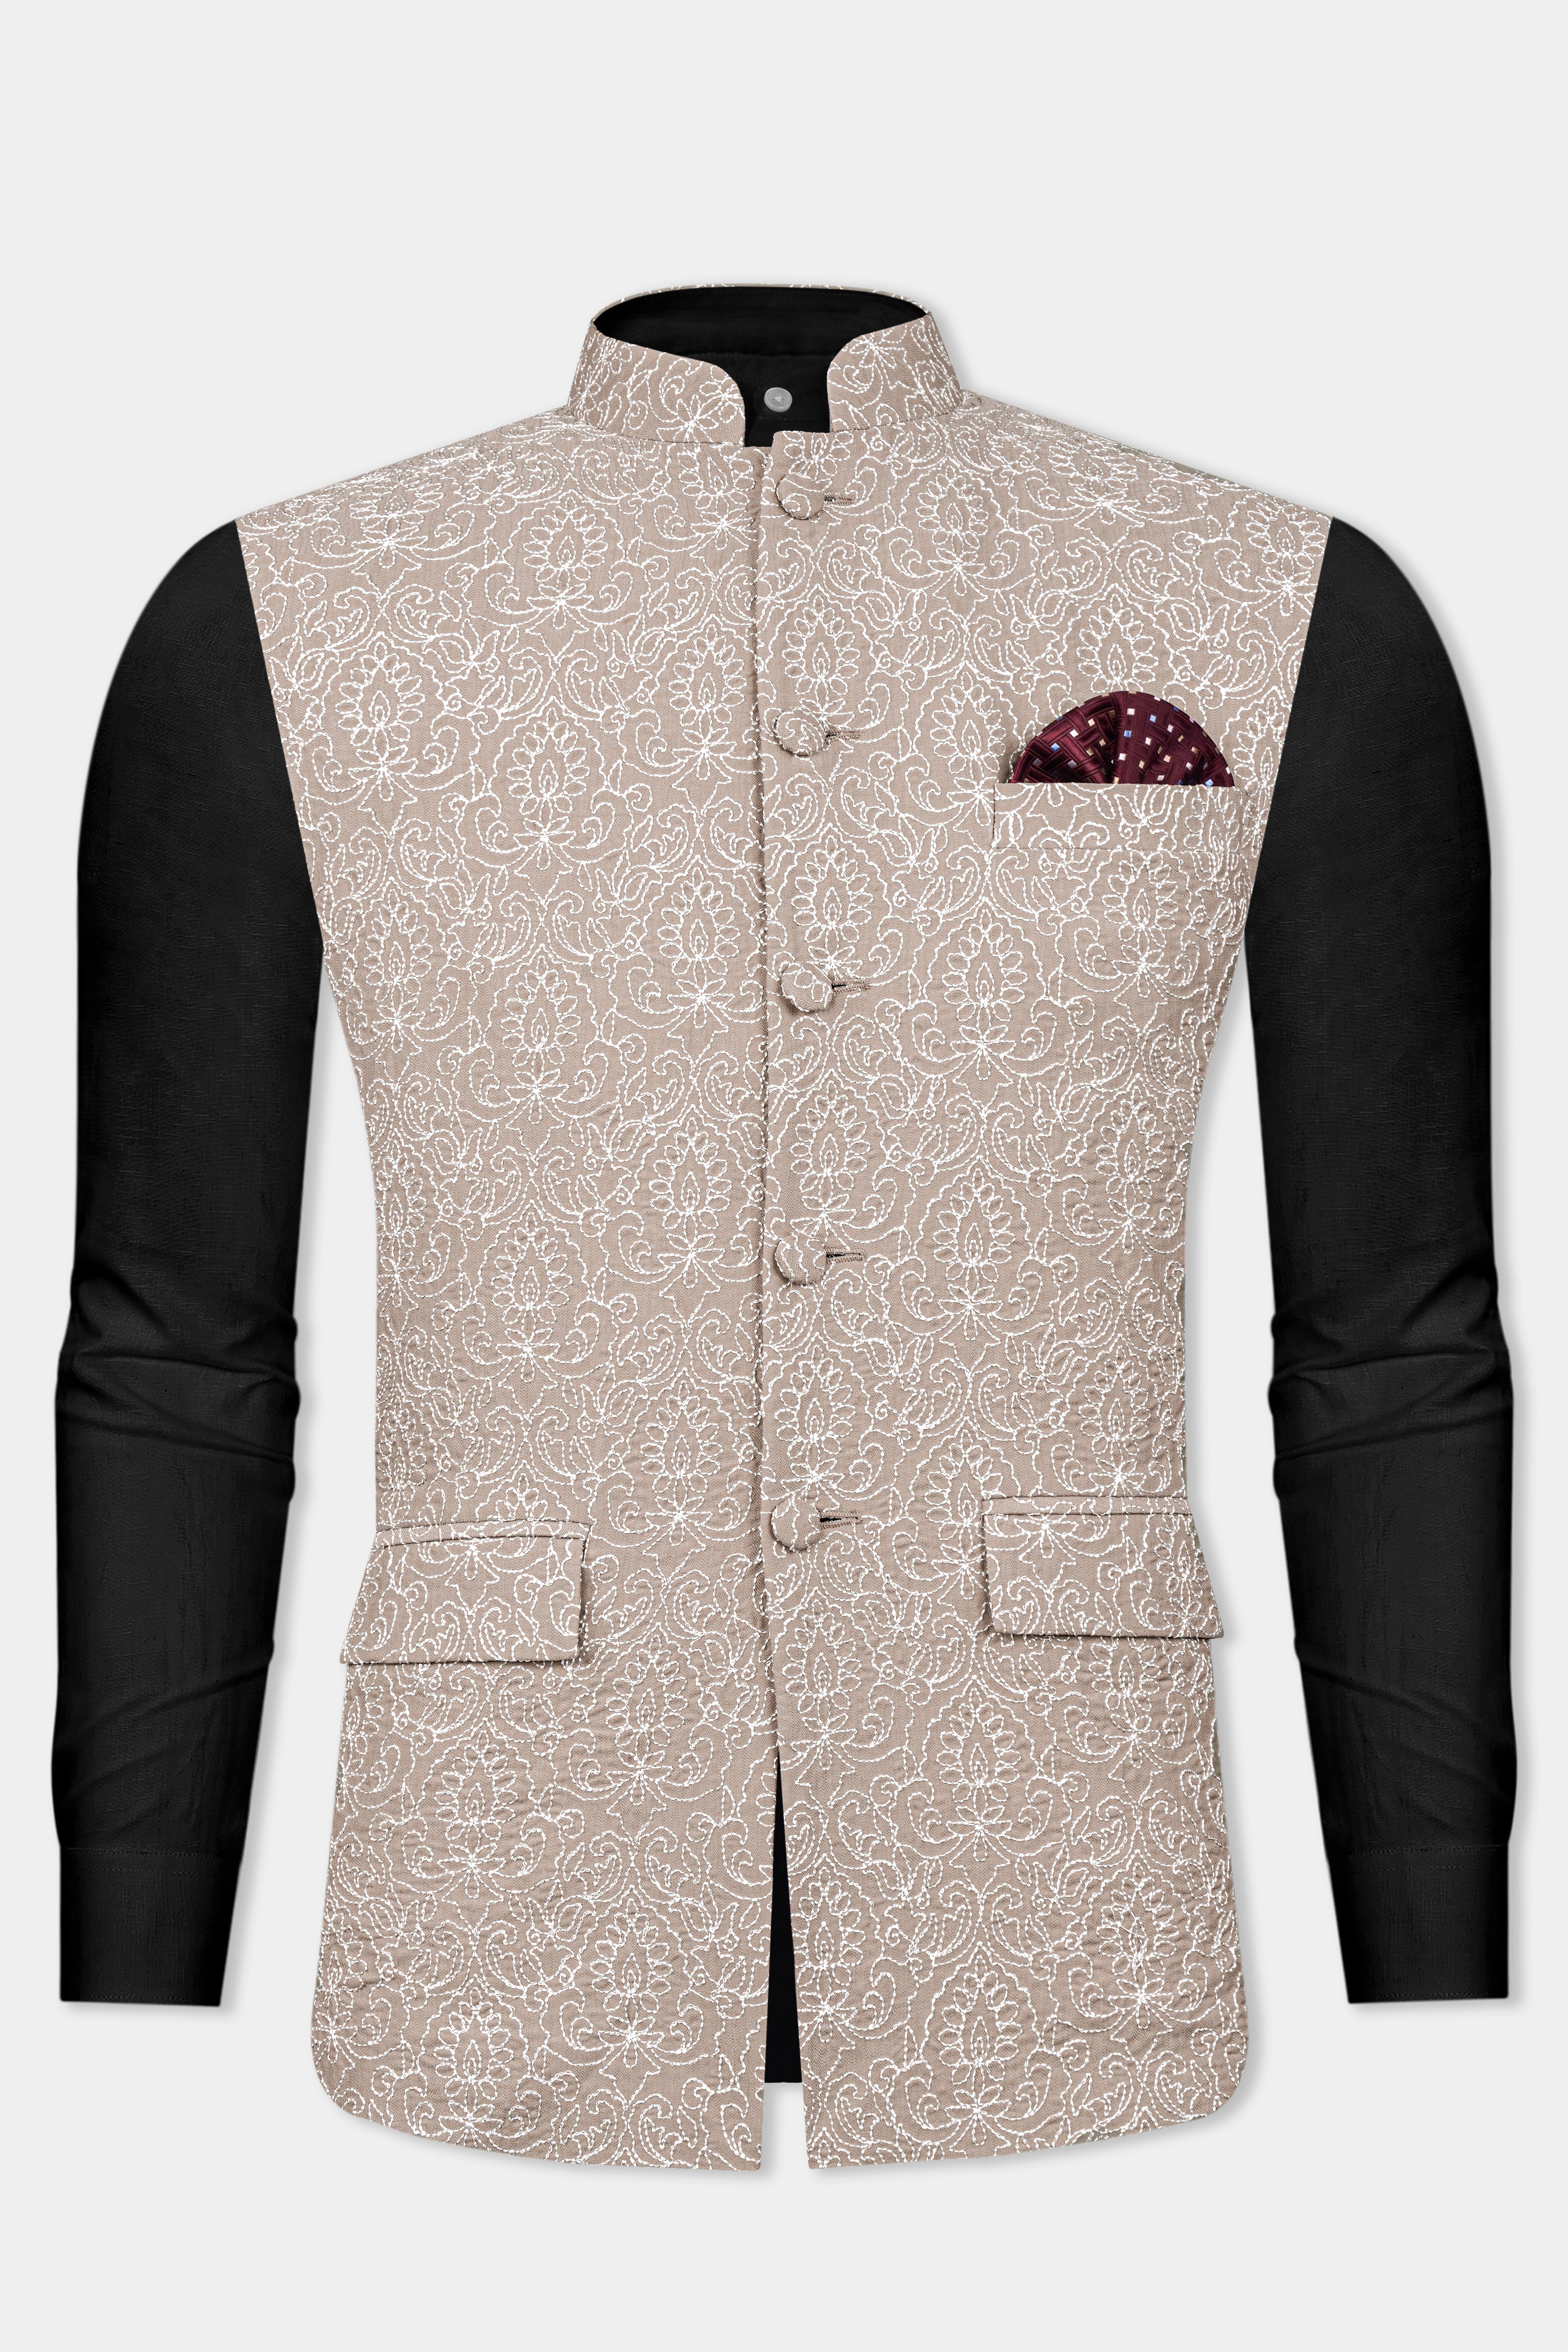 Dawn Brown Floral Cotton Thread Embroidered Viscose Designer Viscose Nehru Jacket